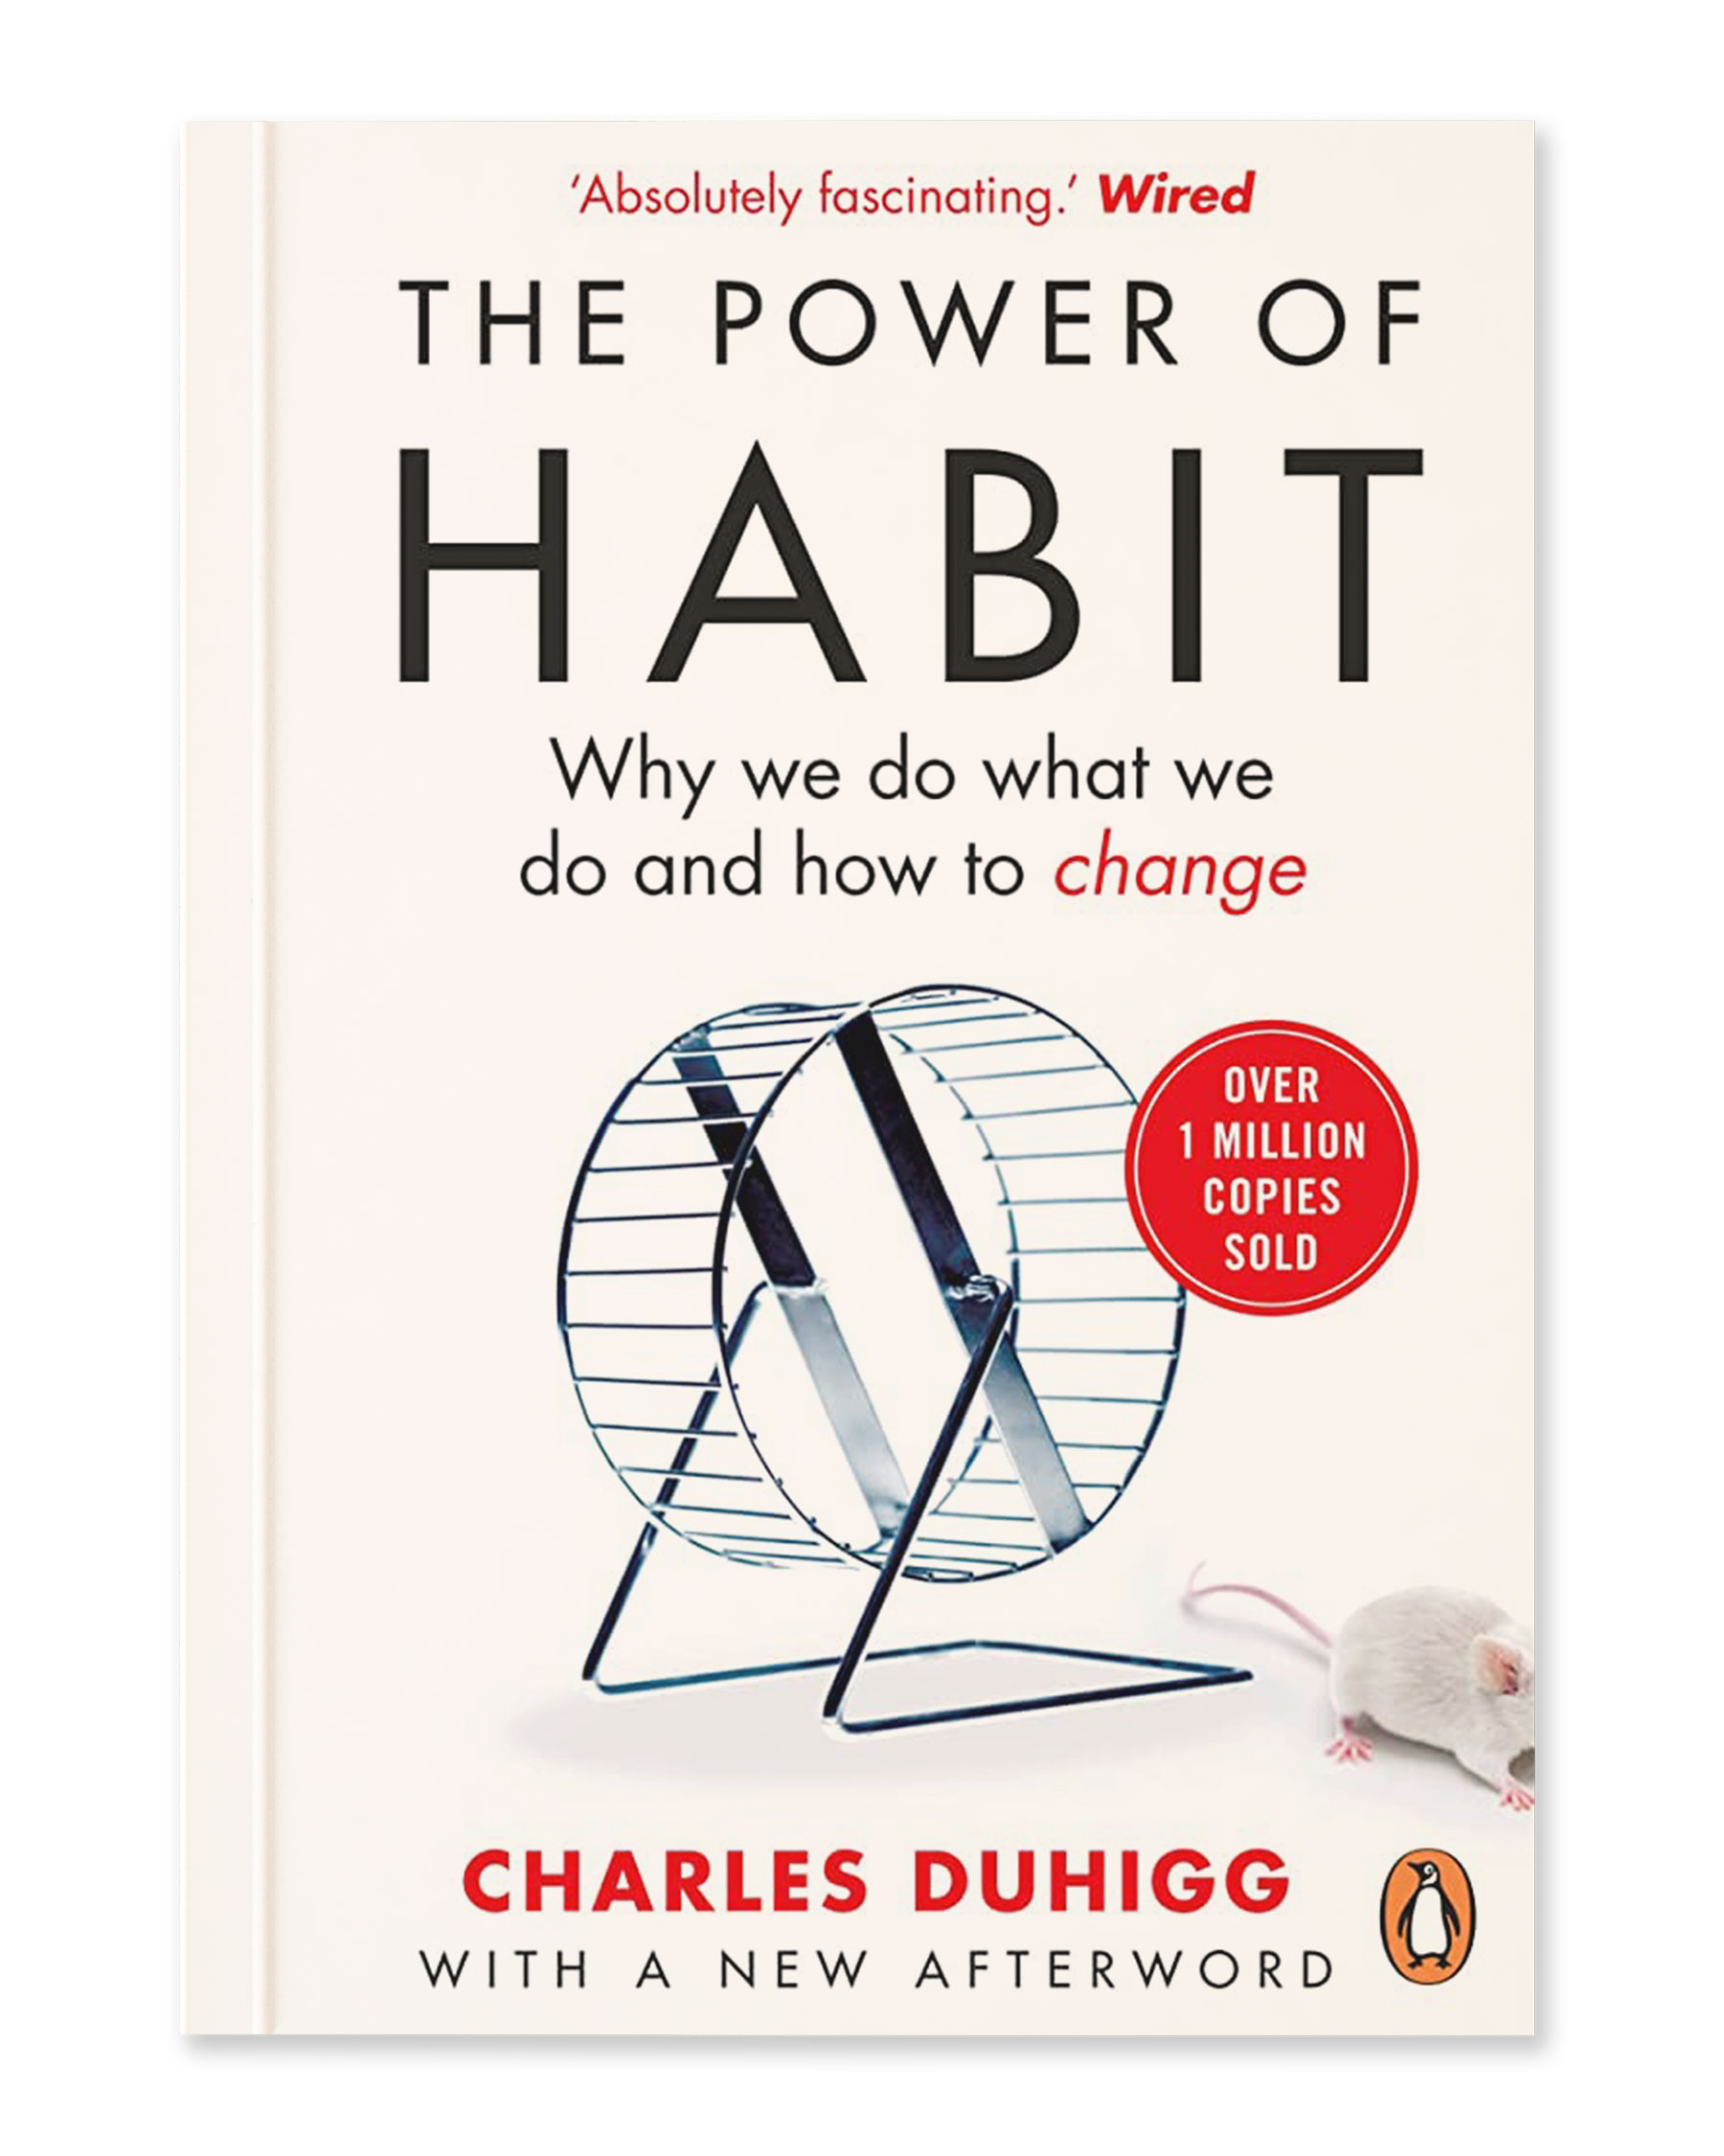 Buchvorschau von The Power of Habit